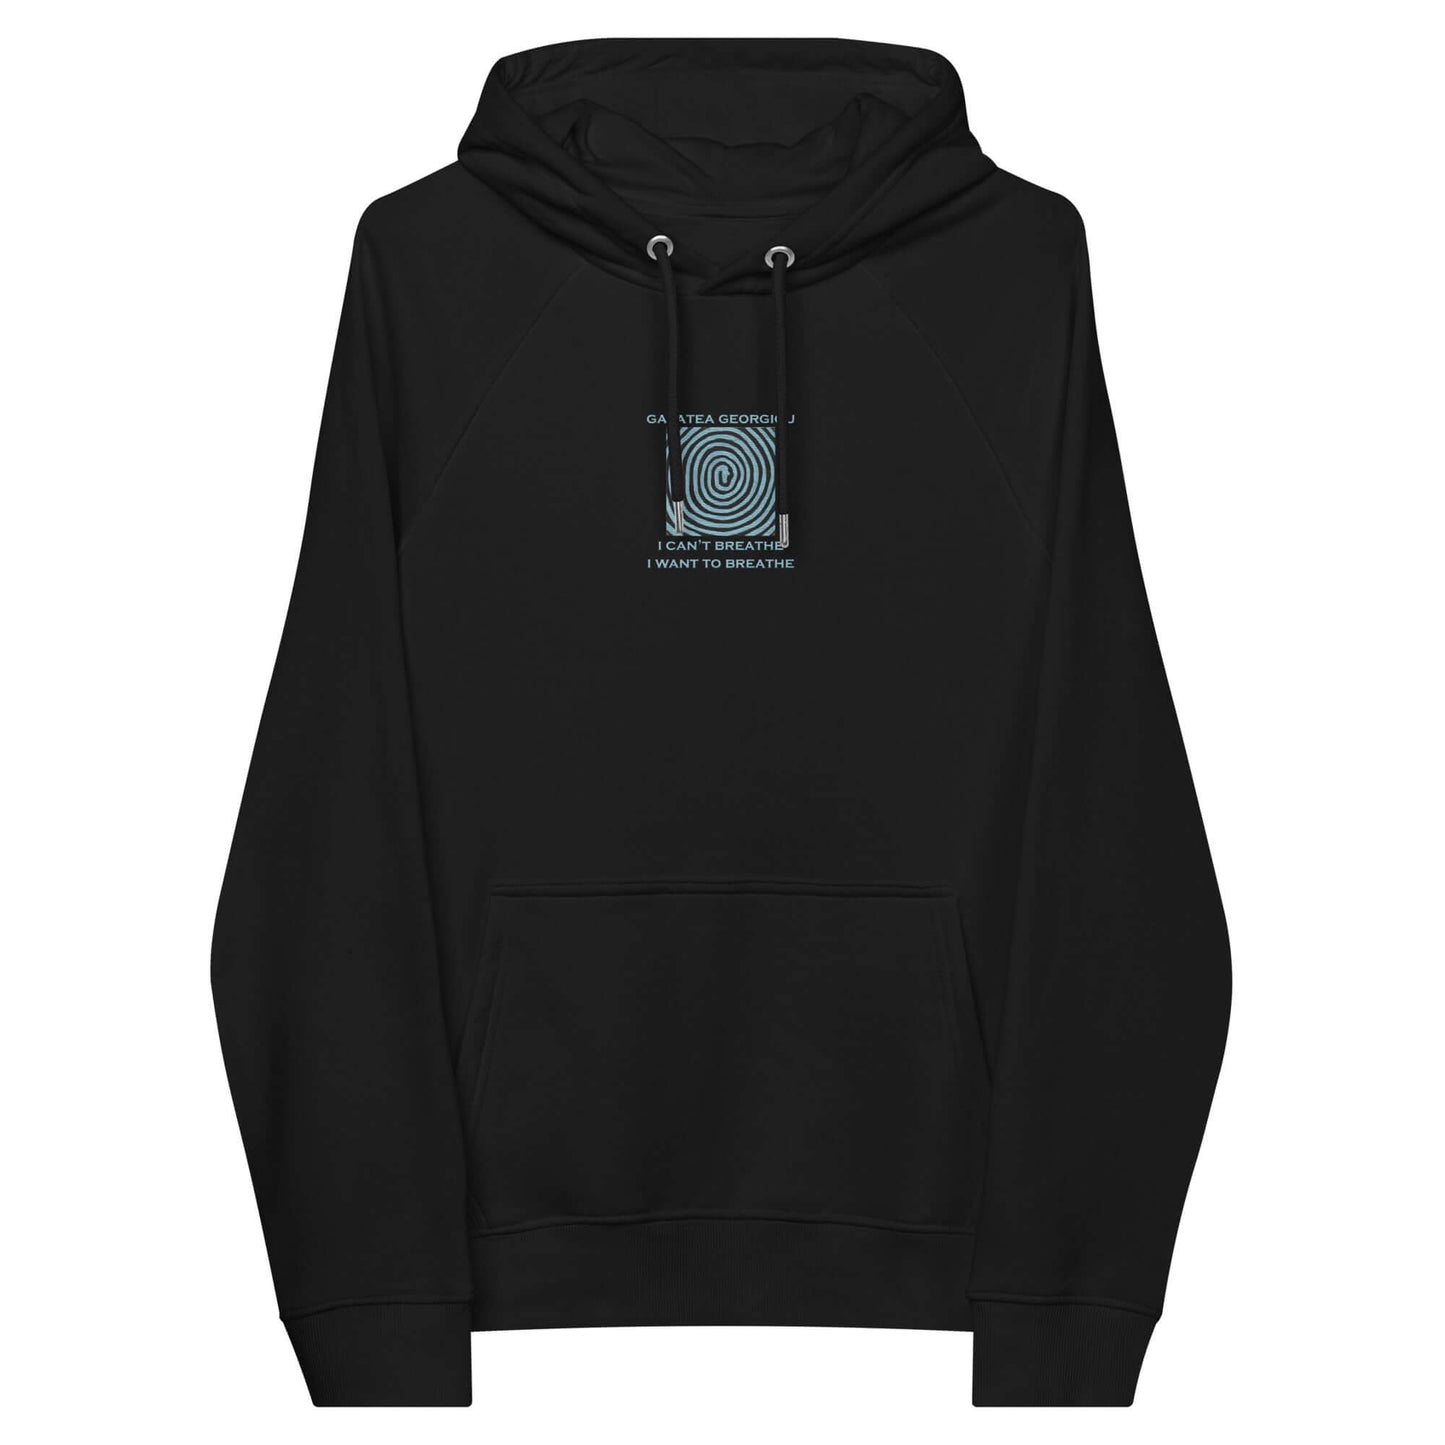 Lying - Embroidery Unisex eco raglan hoodie